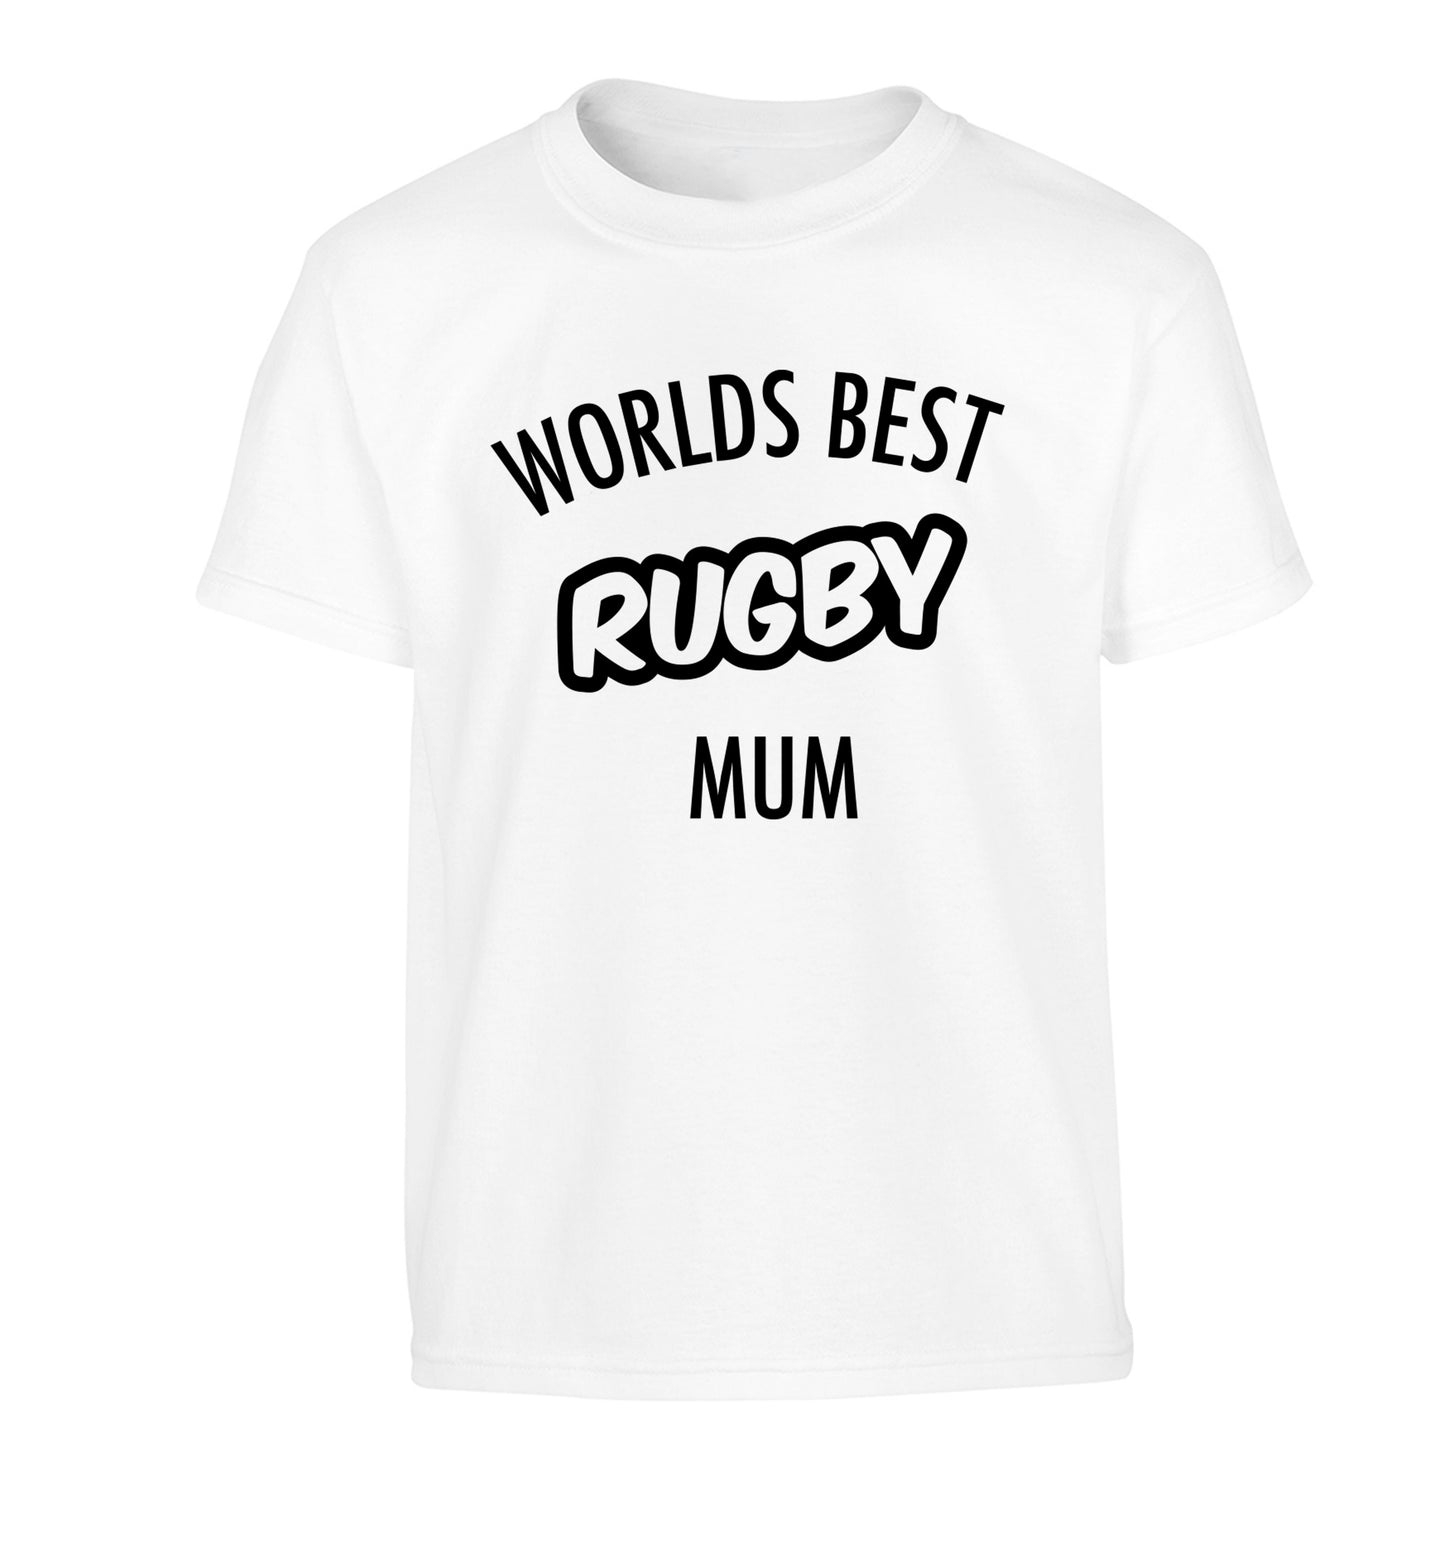 Worlds best rugby mum Children's white Tshirt 12-13 Years